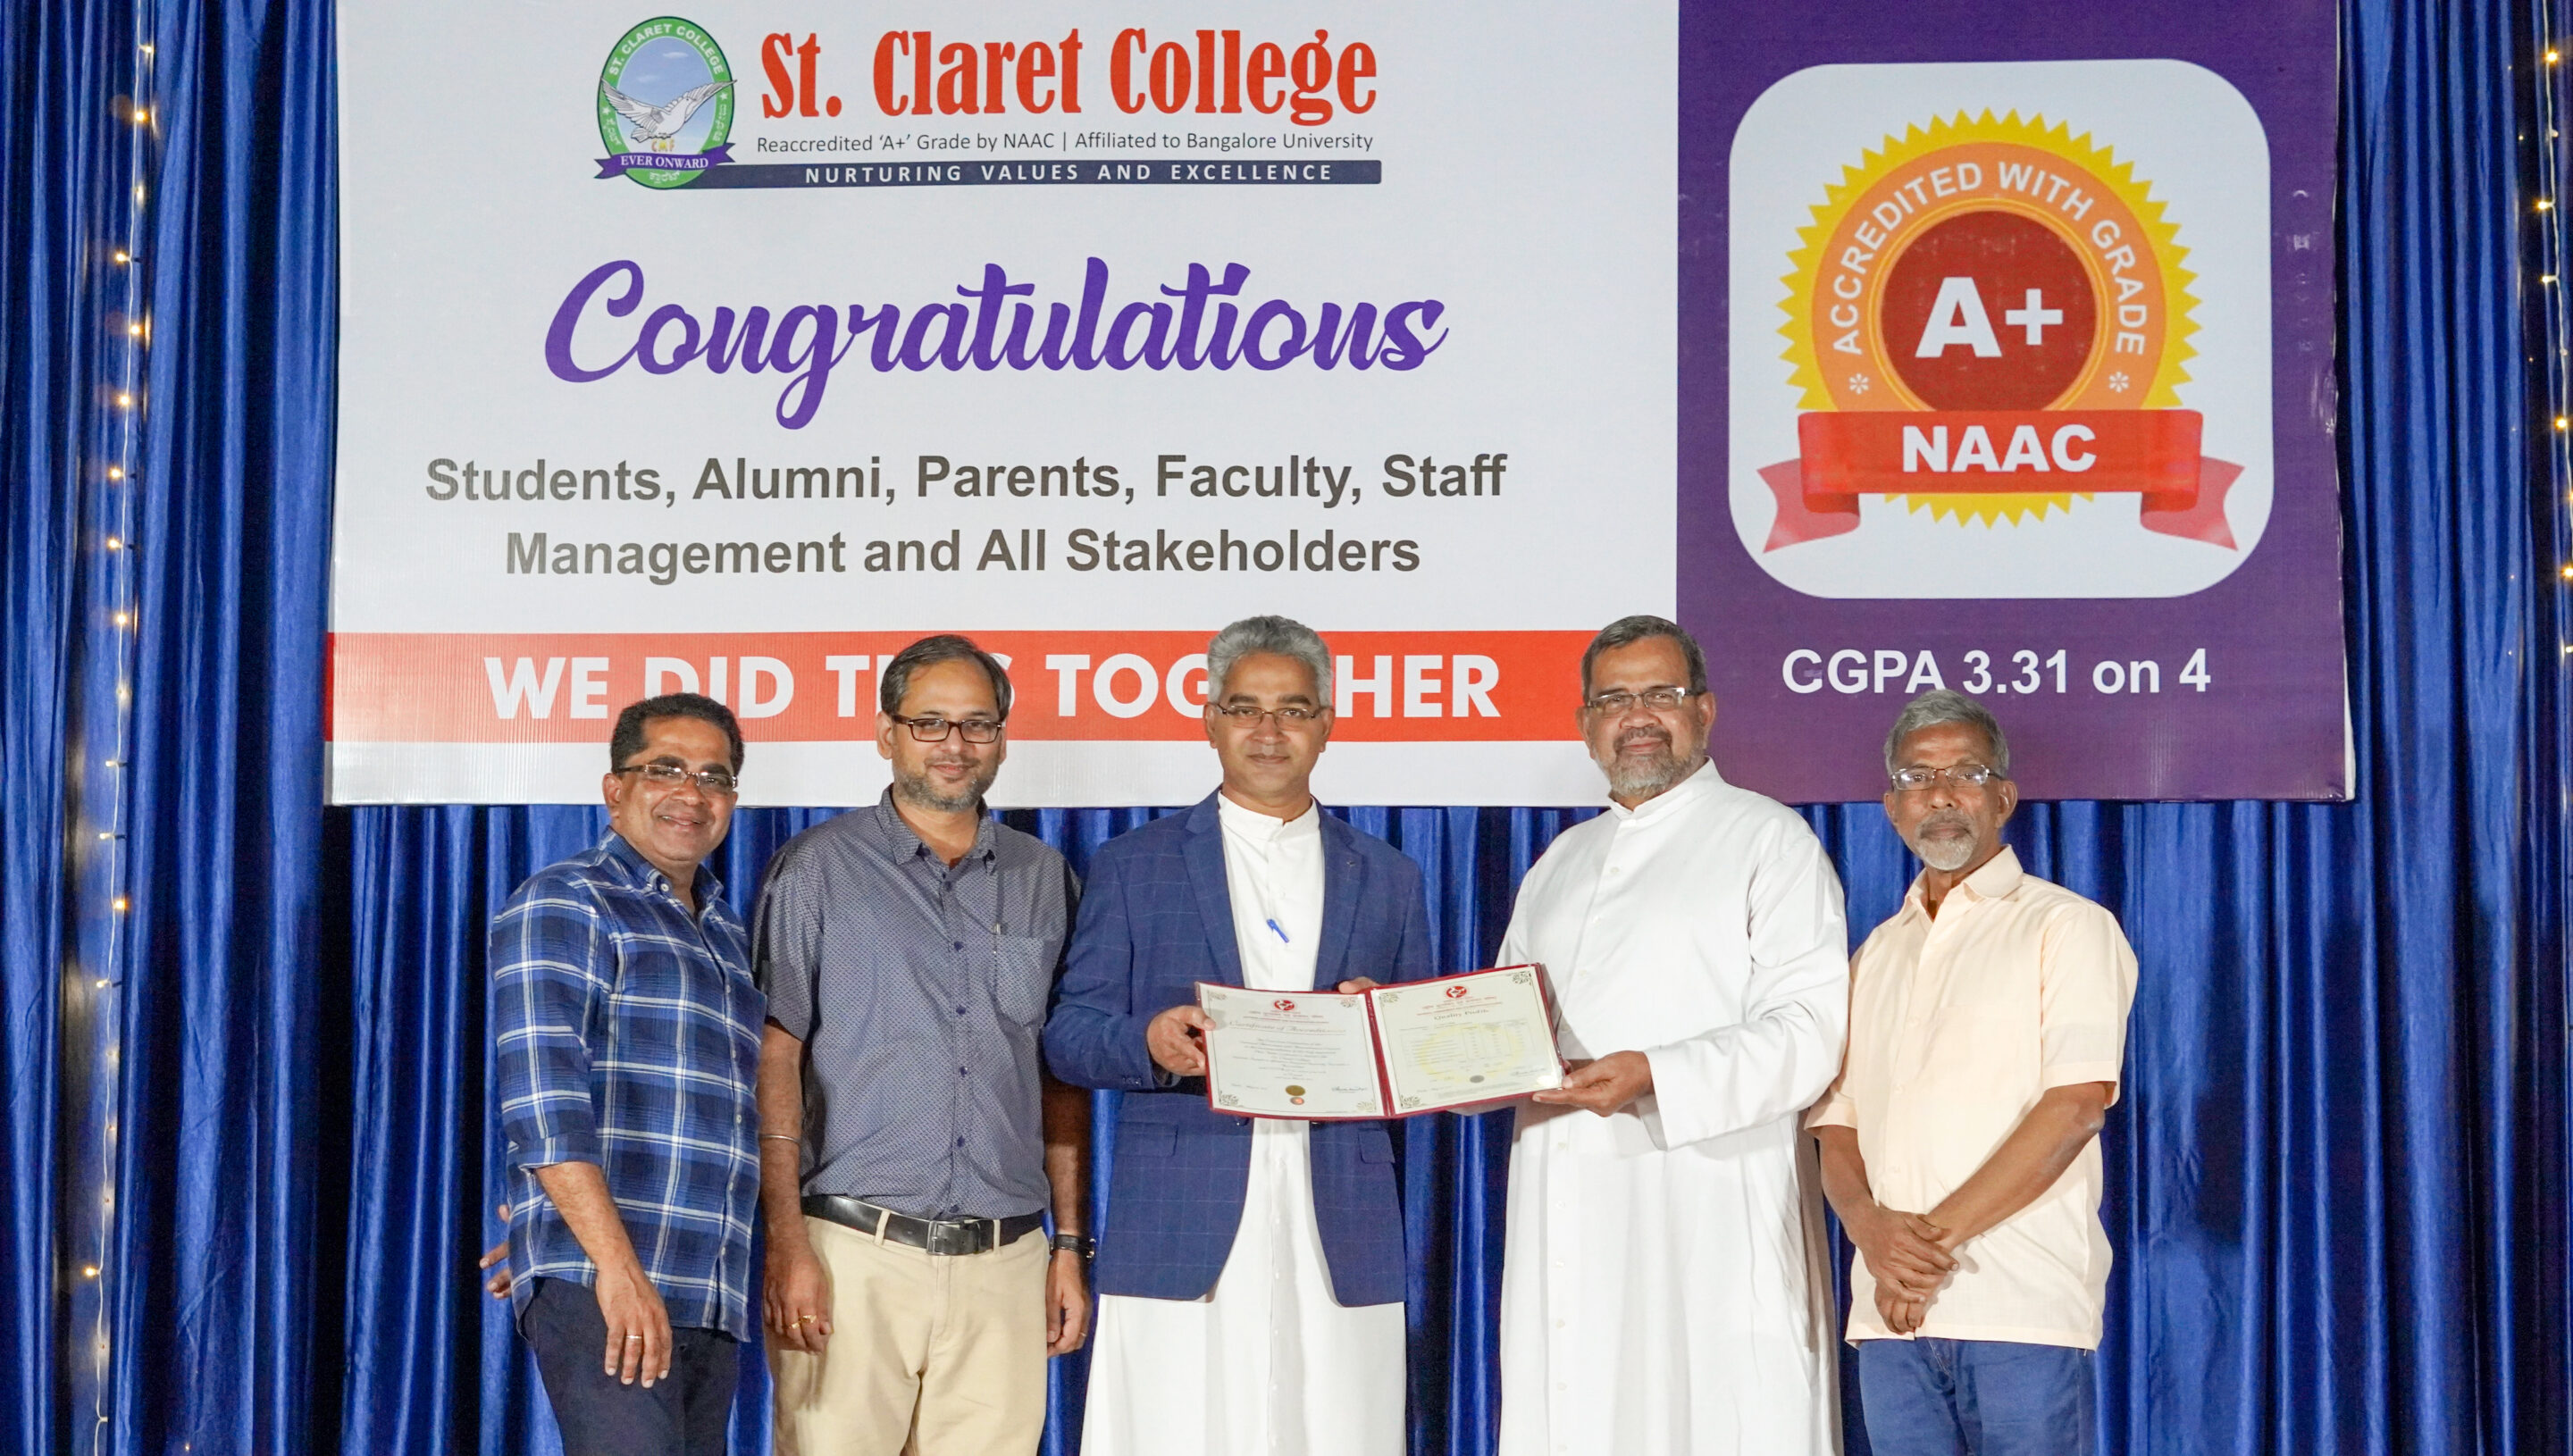 Le St. Claret College, Bangalore, a reçu la note A+ du NAAC